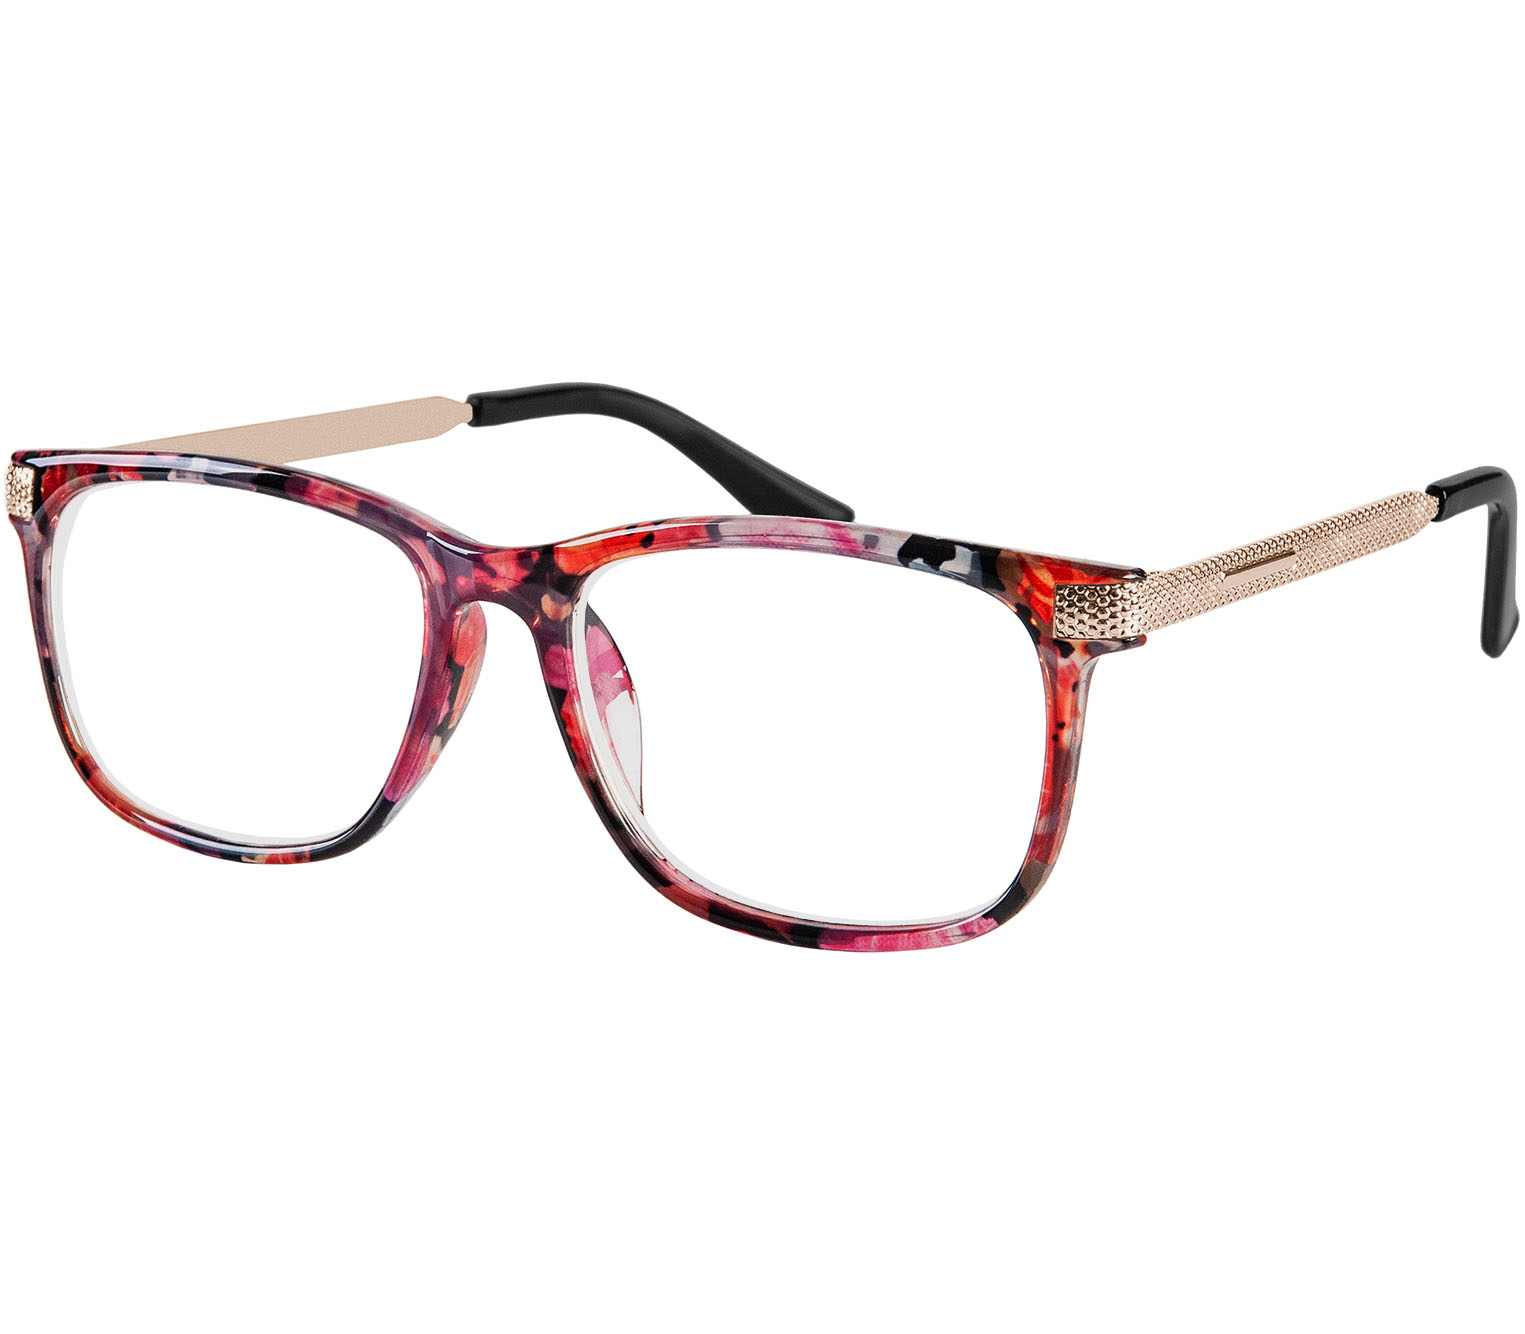 Main Image (Angle) - Lima (Multi-coloured) Reading Glasses